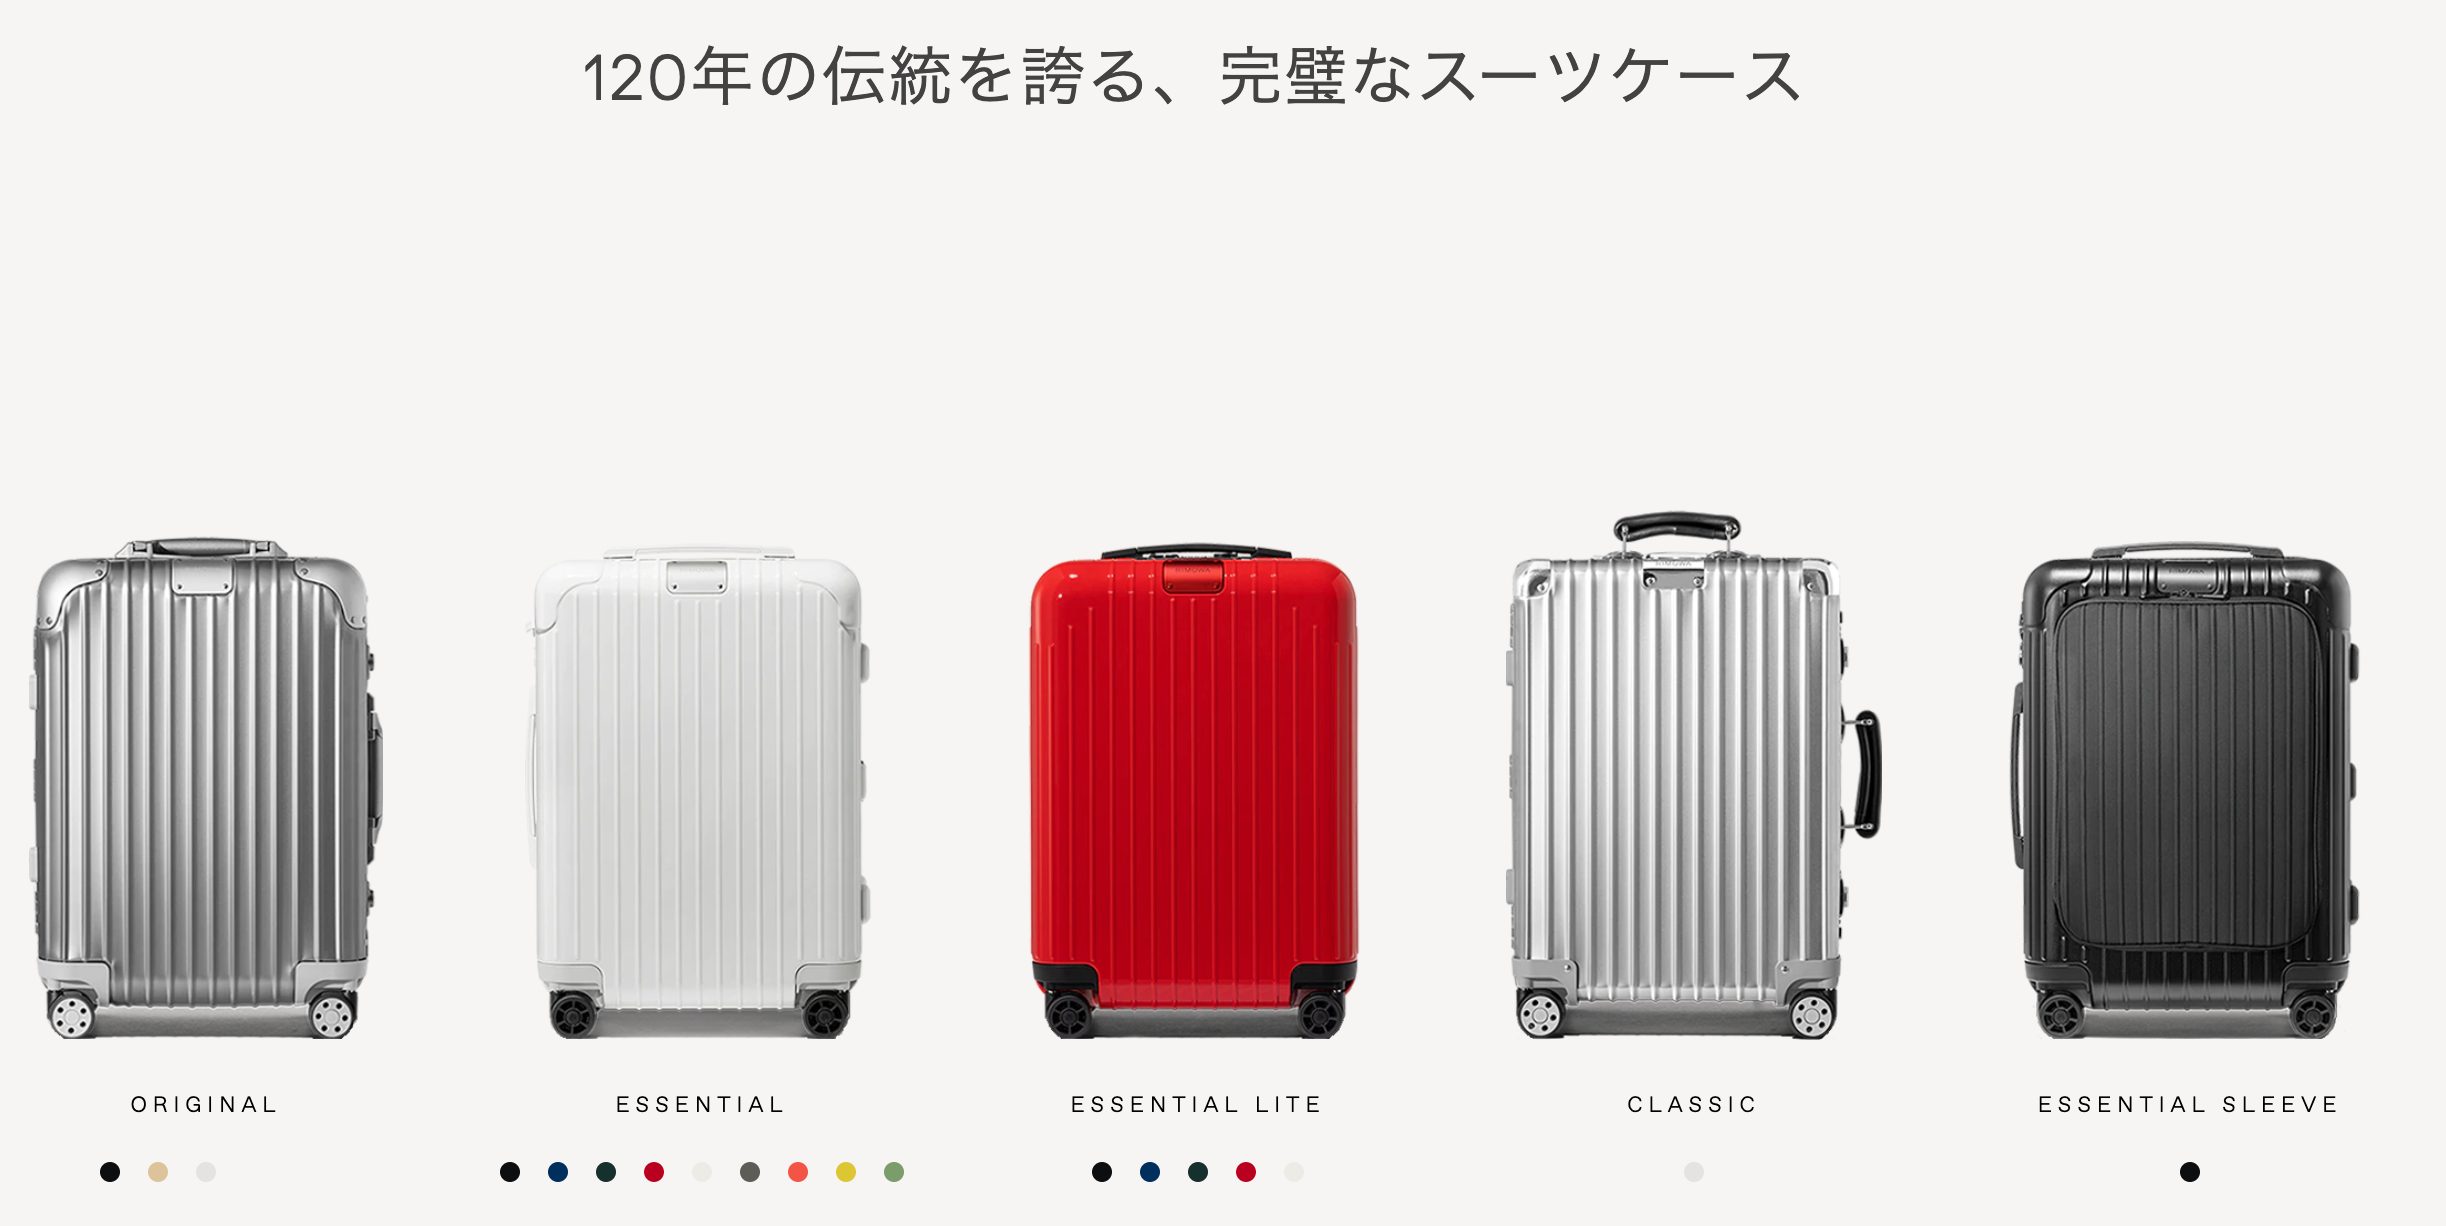 海外旅行スーツケースの選び方とおすすめのブランド5選 女性視点で24ヶ国渡航経験からお伝え